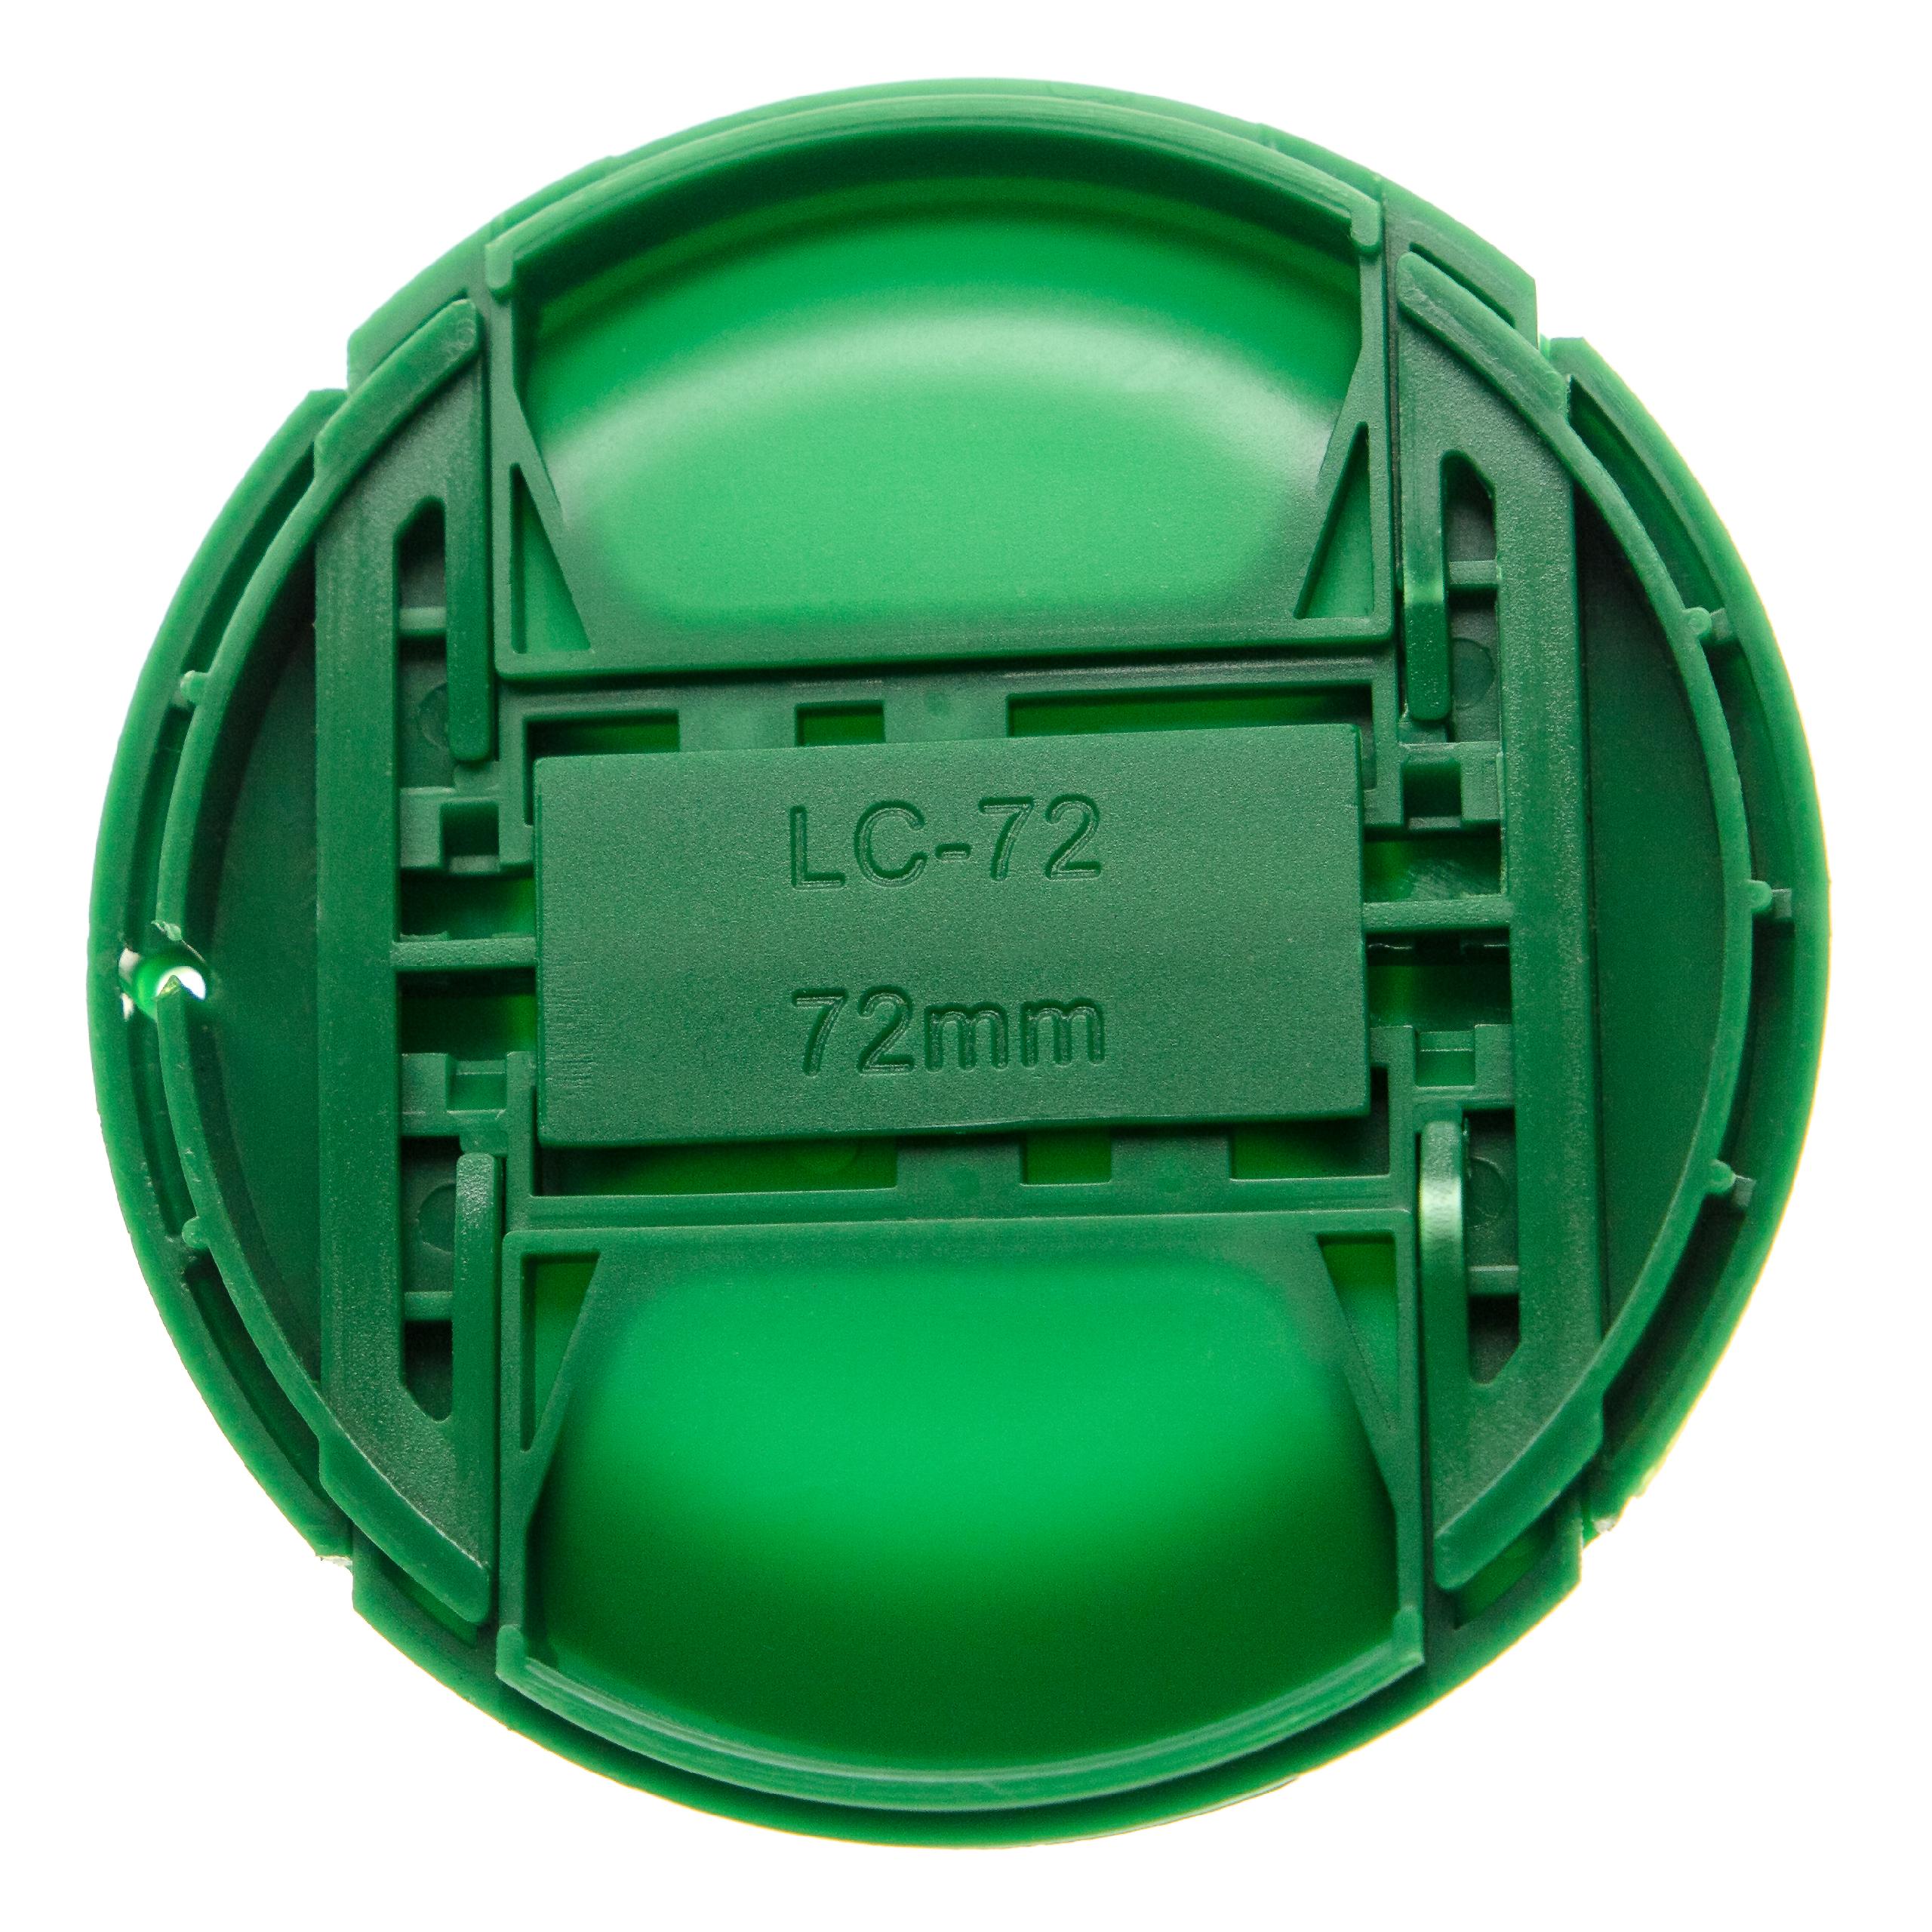 Tapa objetivo 72mm para cámara - Con mango interior, plástico verde